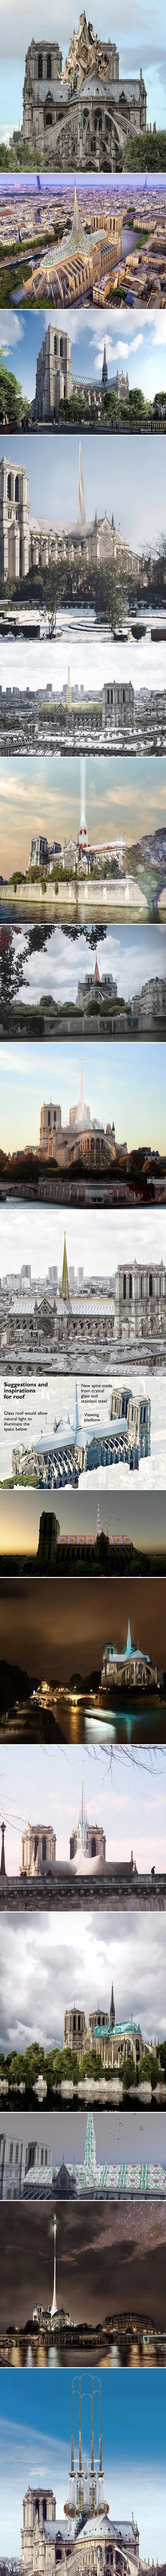 Umjetnici i arhitekti predložili su novi izgled Notre-Dame katedrale, veliki dio prijedloga izgleda bizarno